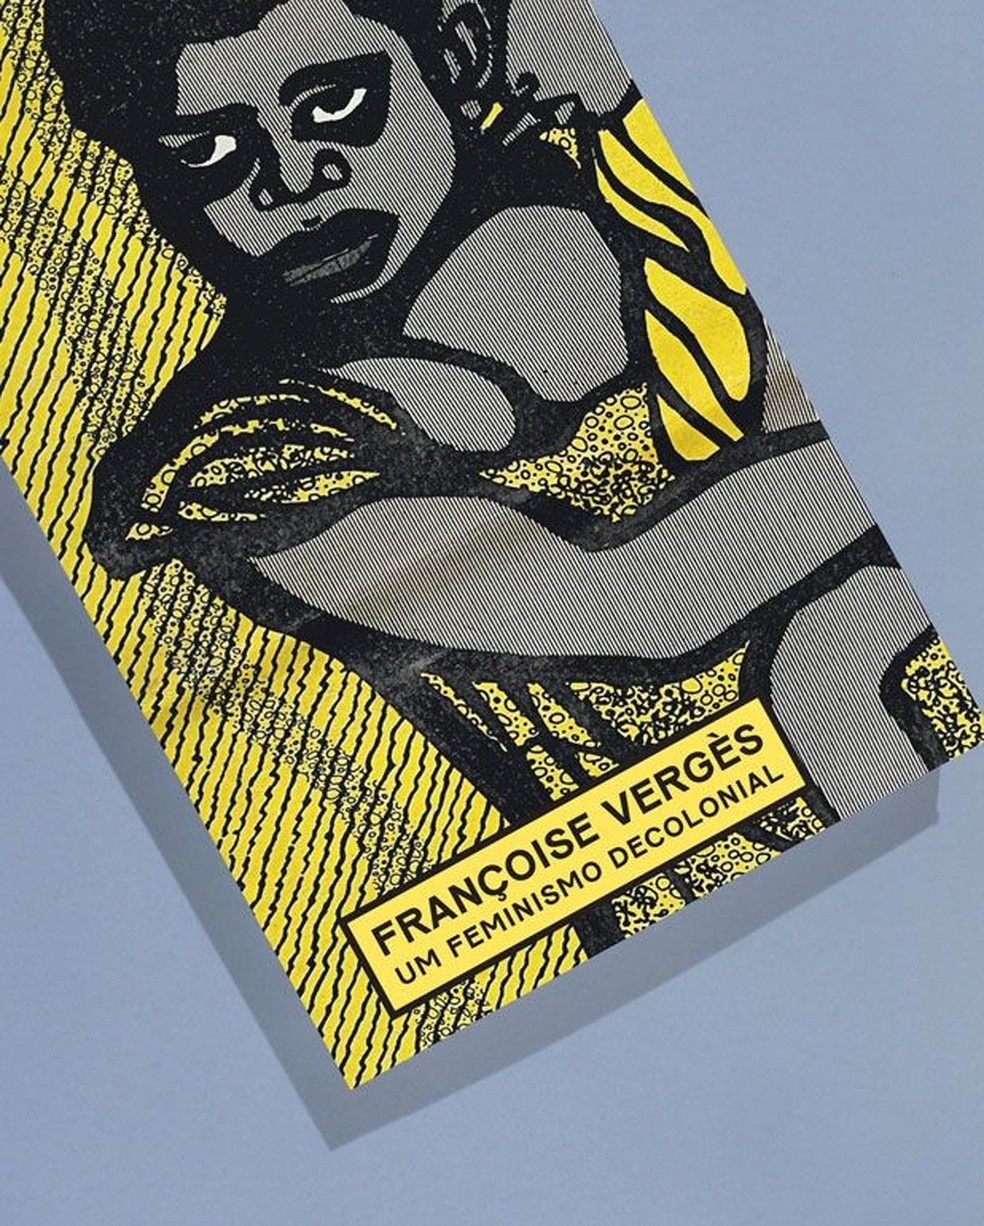 Livro "Um Feminismo Decolonial", de Françoise Vèrges, é um dos destaques da Livrarista (Foto: Divulgação) — Foto: Glamour